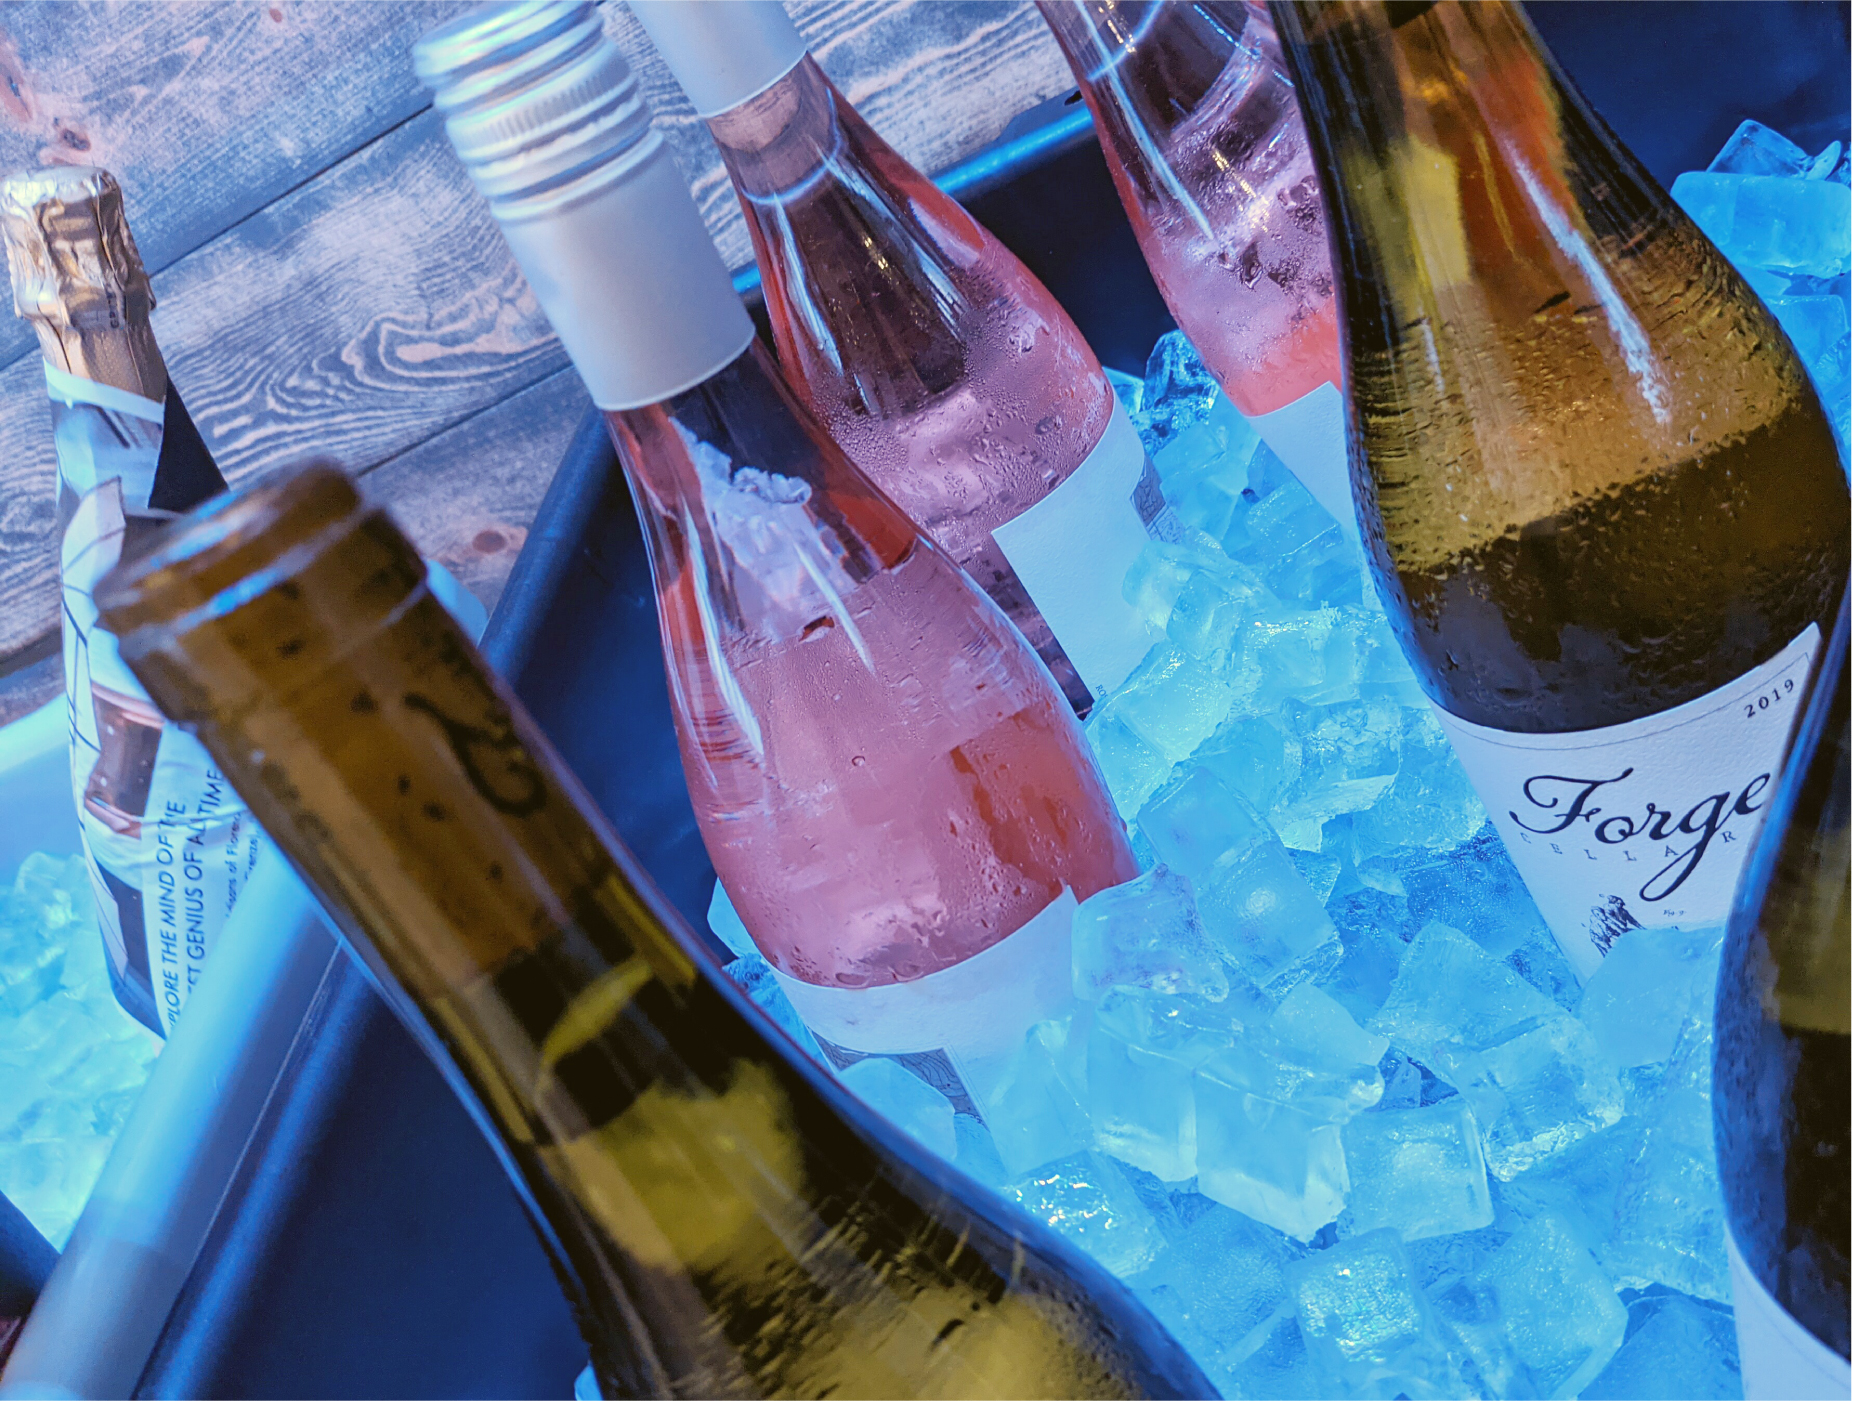 Wine bottles on ice.